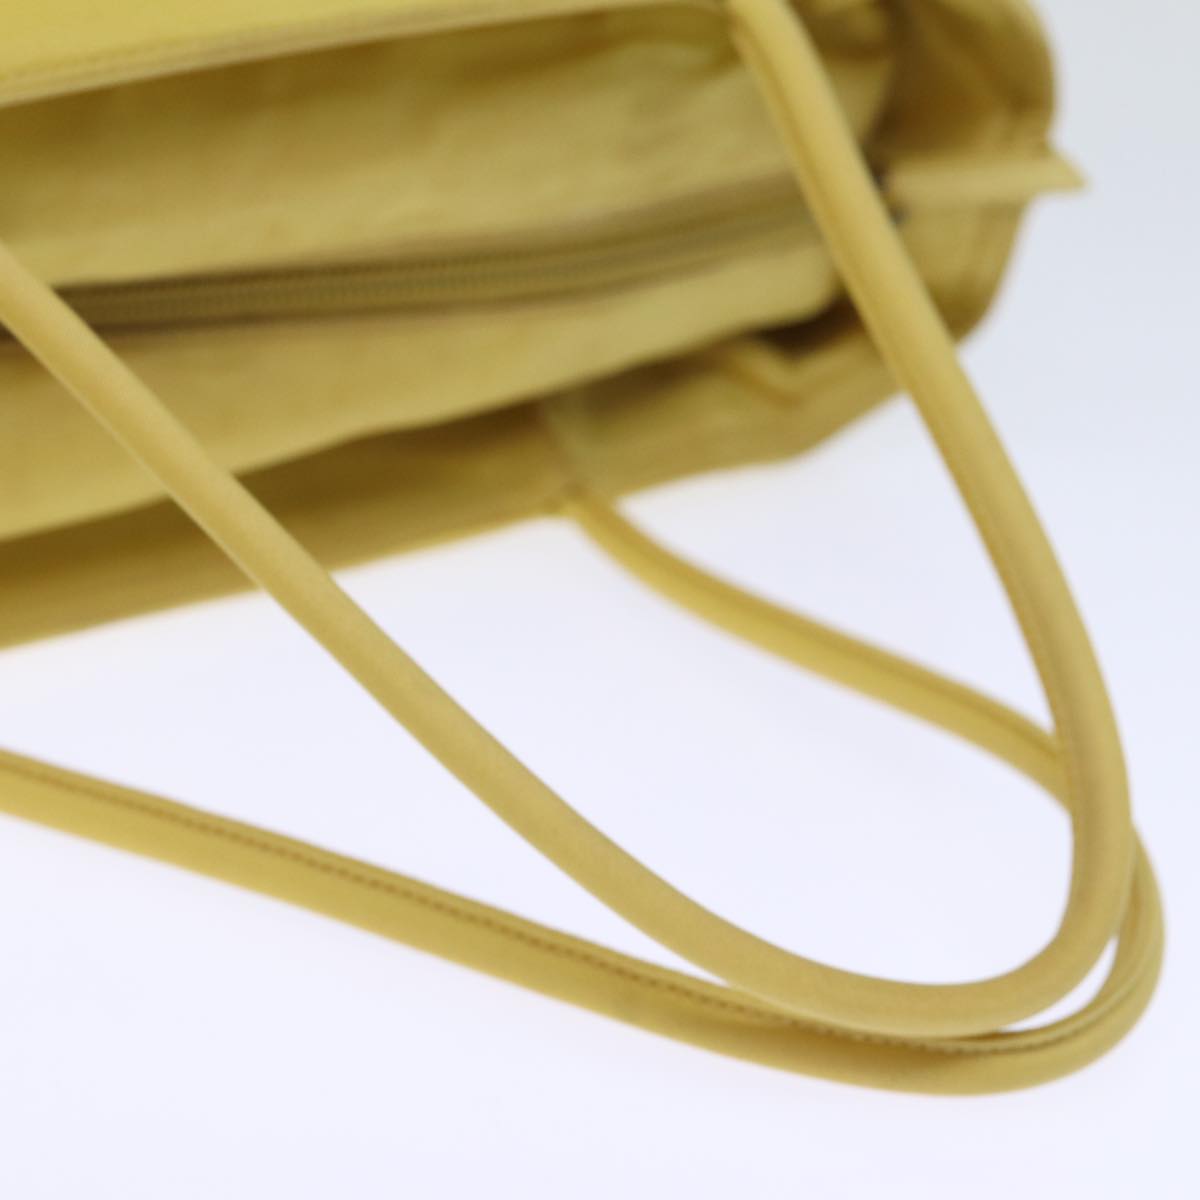 PRADA Hand Bag Nylon Yellow Auth 72745